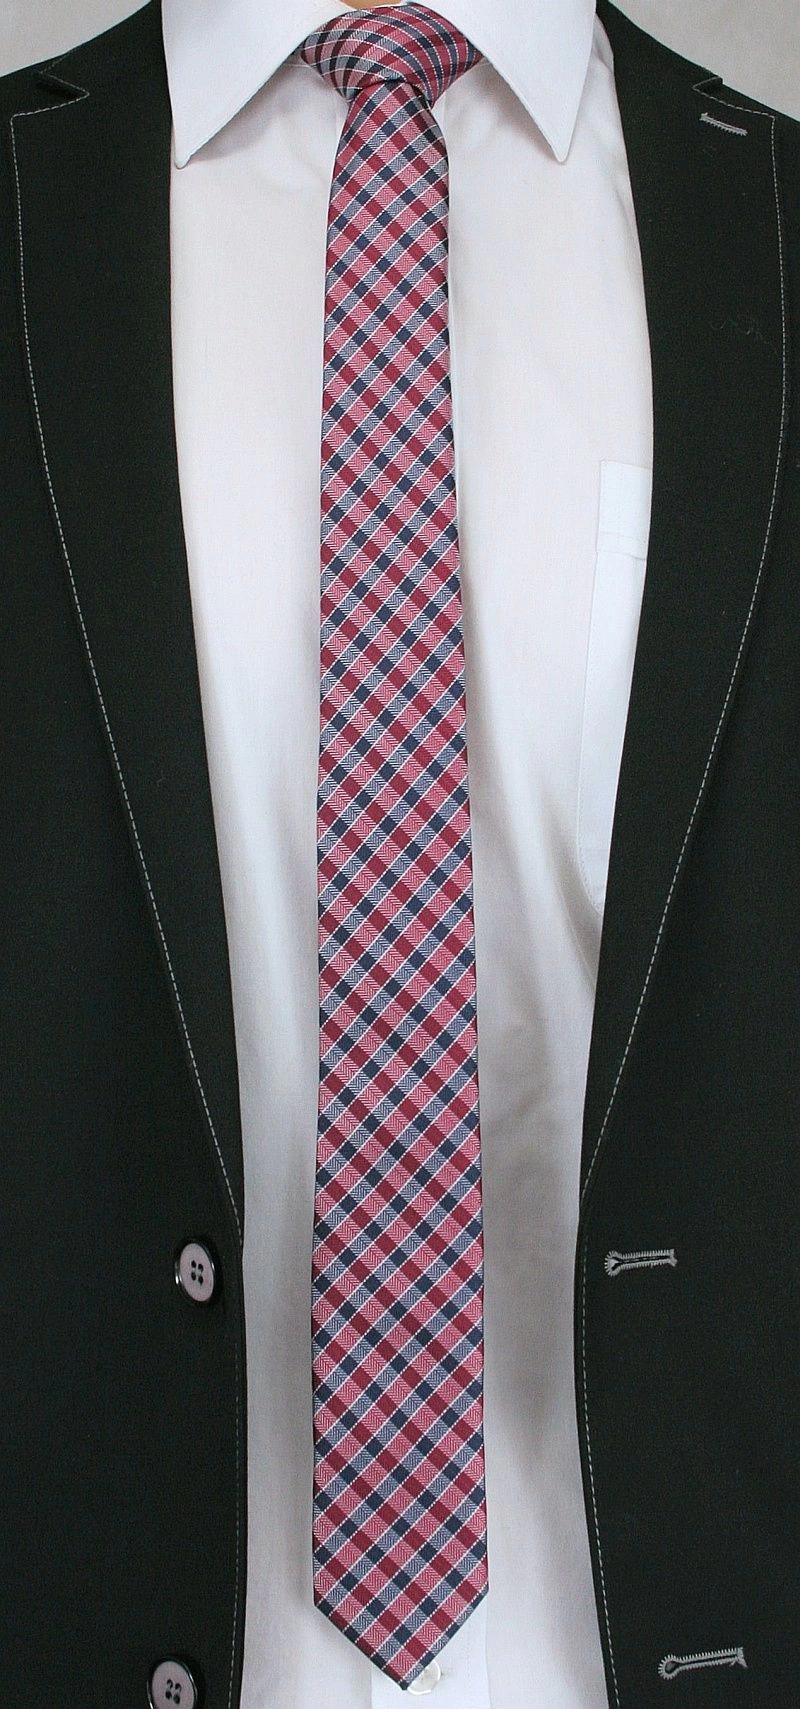 Bordowo-Granatowy Stylowy Krawat (Śledź) Męski -ALTIES- 5 cm, Wąski, w Kratkę